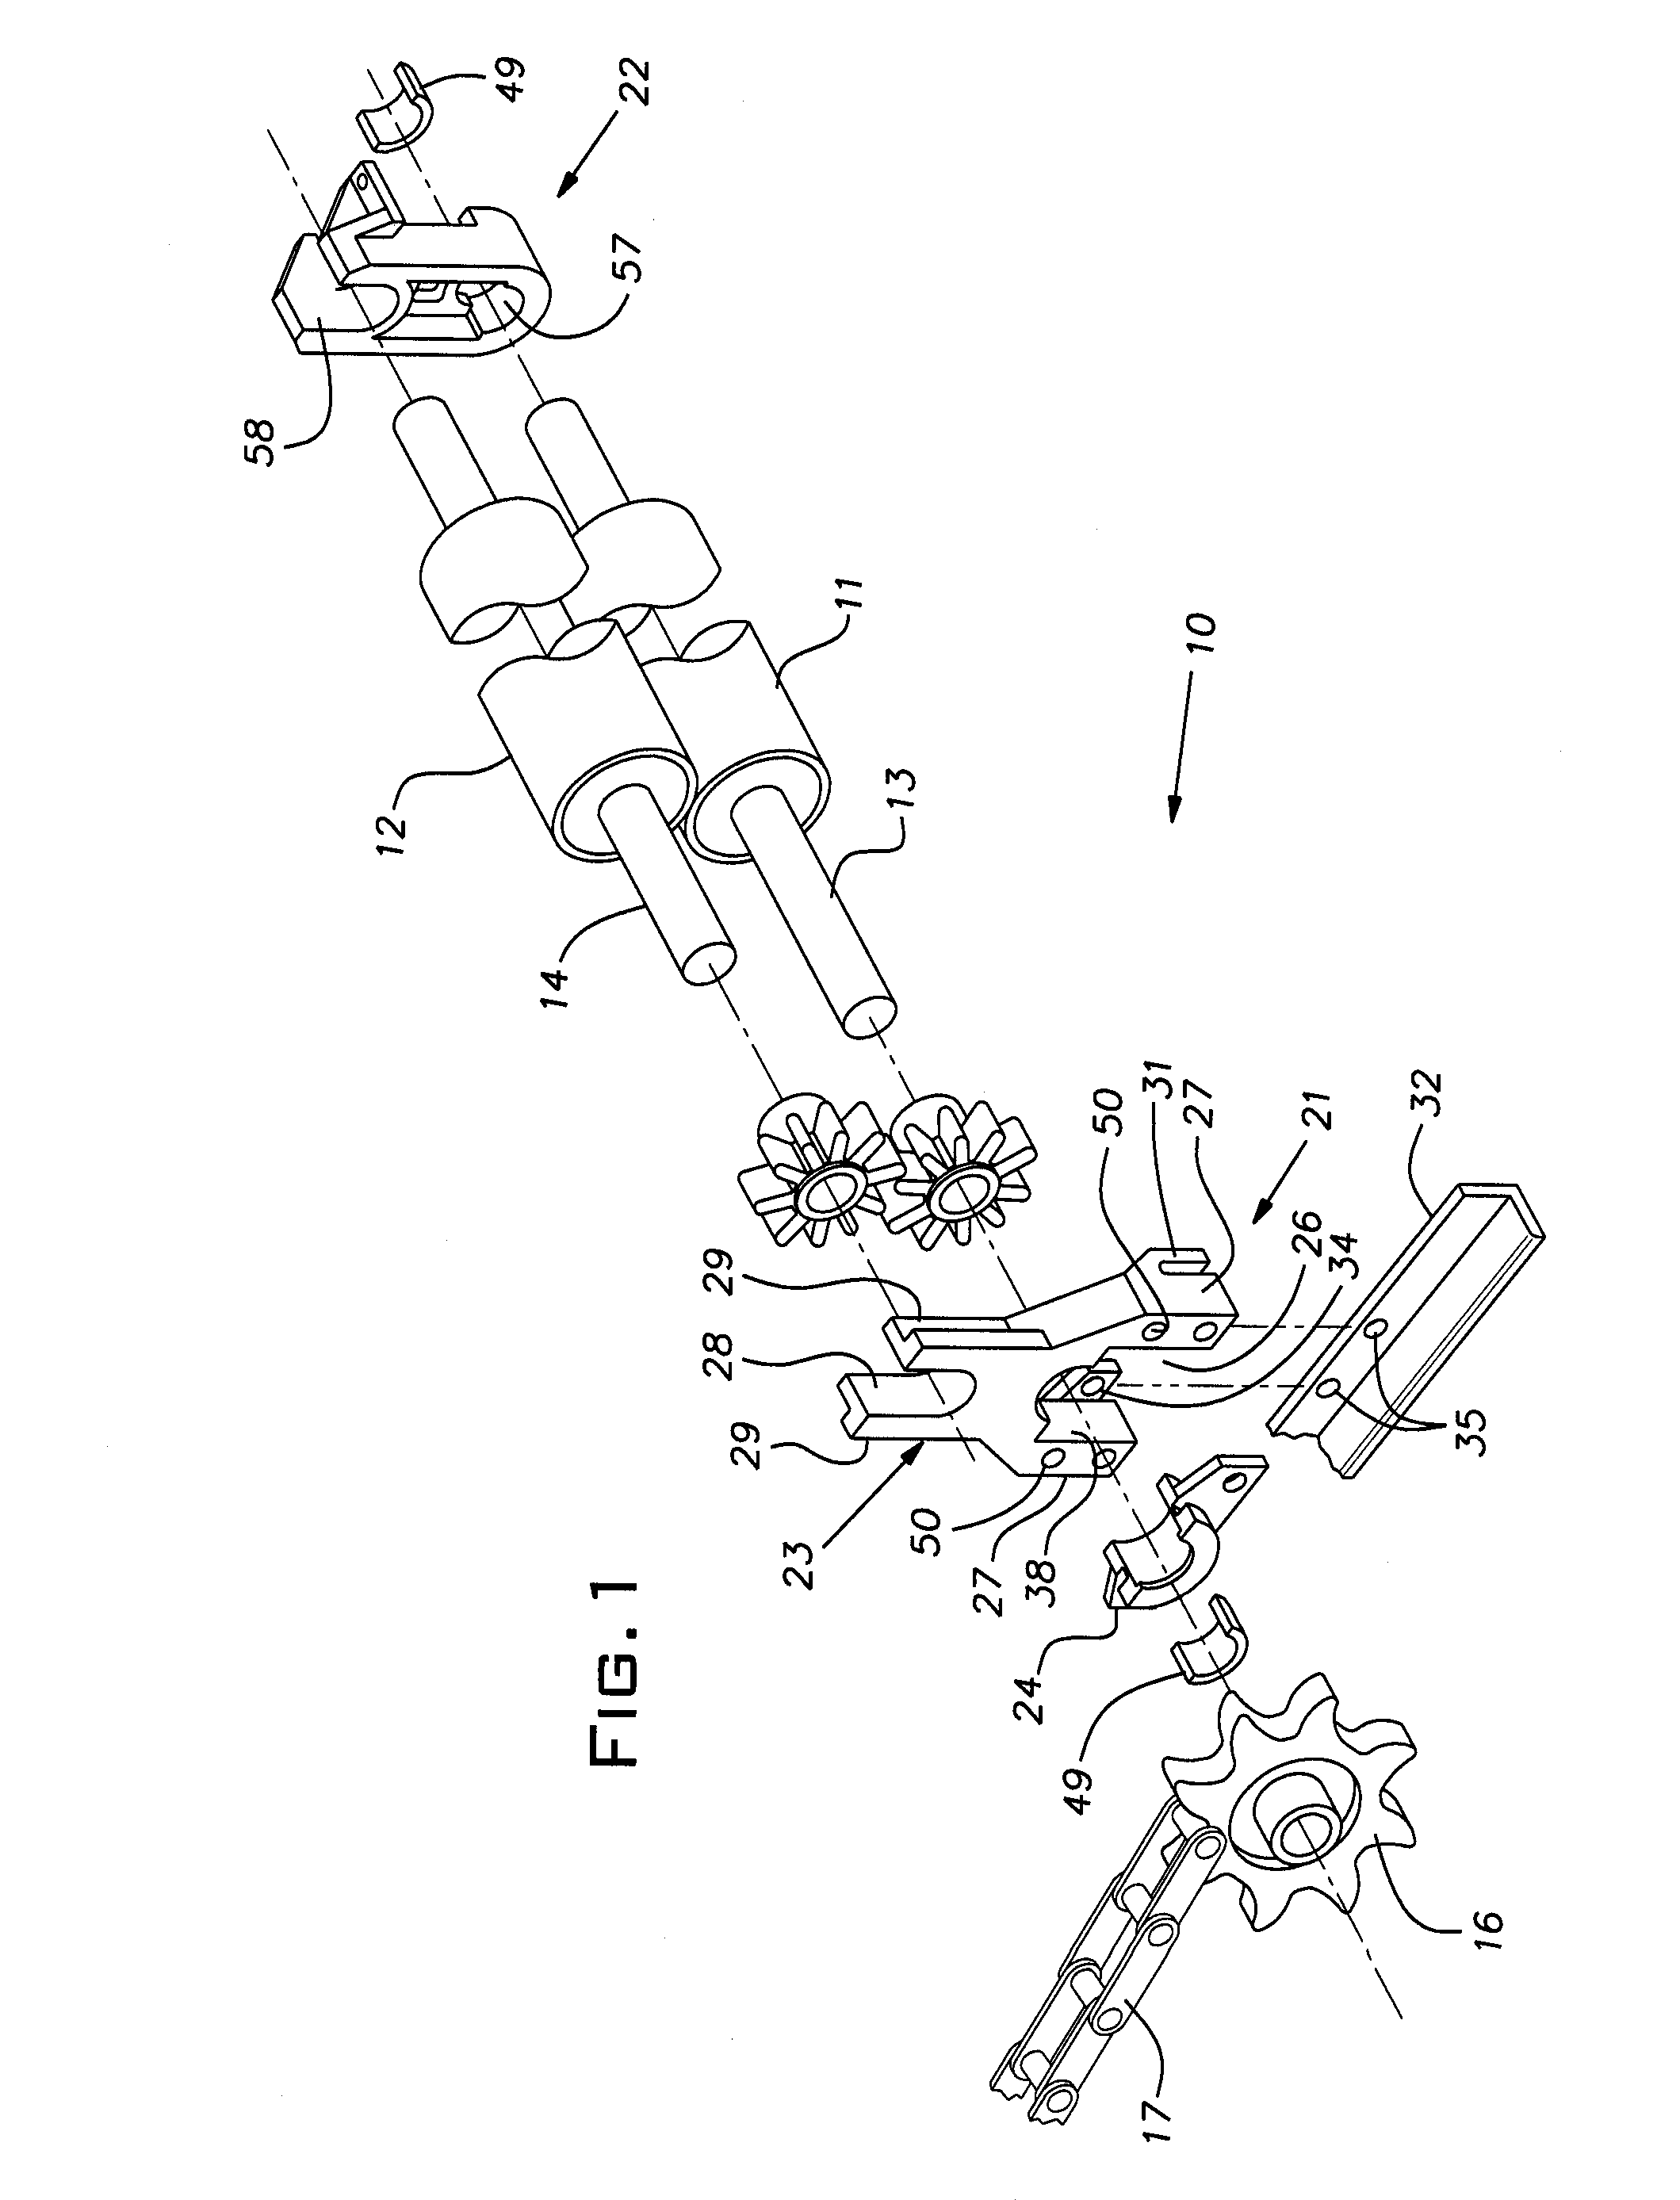 Bearing arrangement for veneer dryer